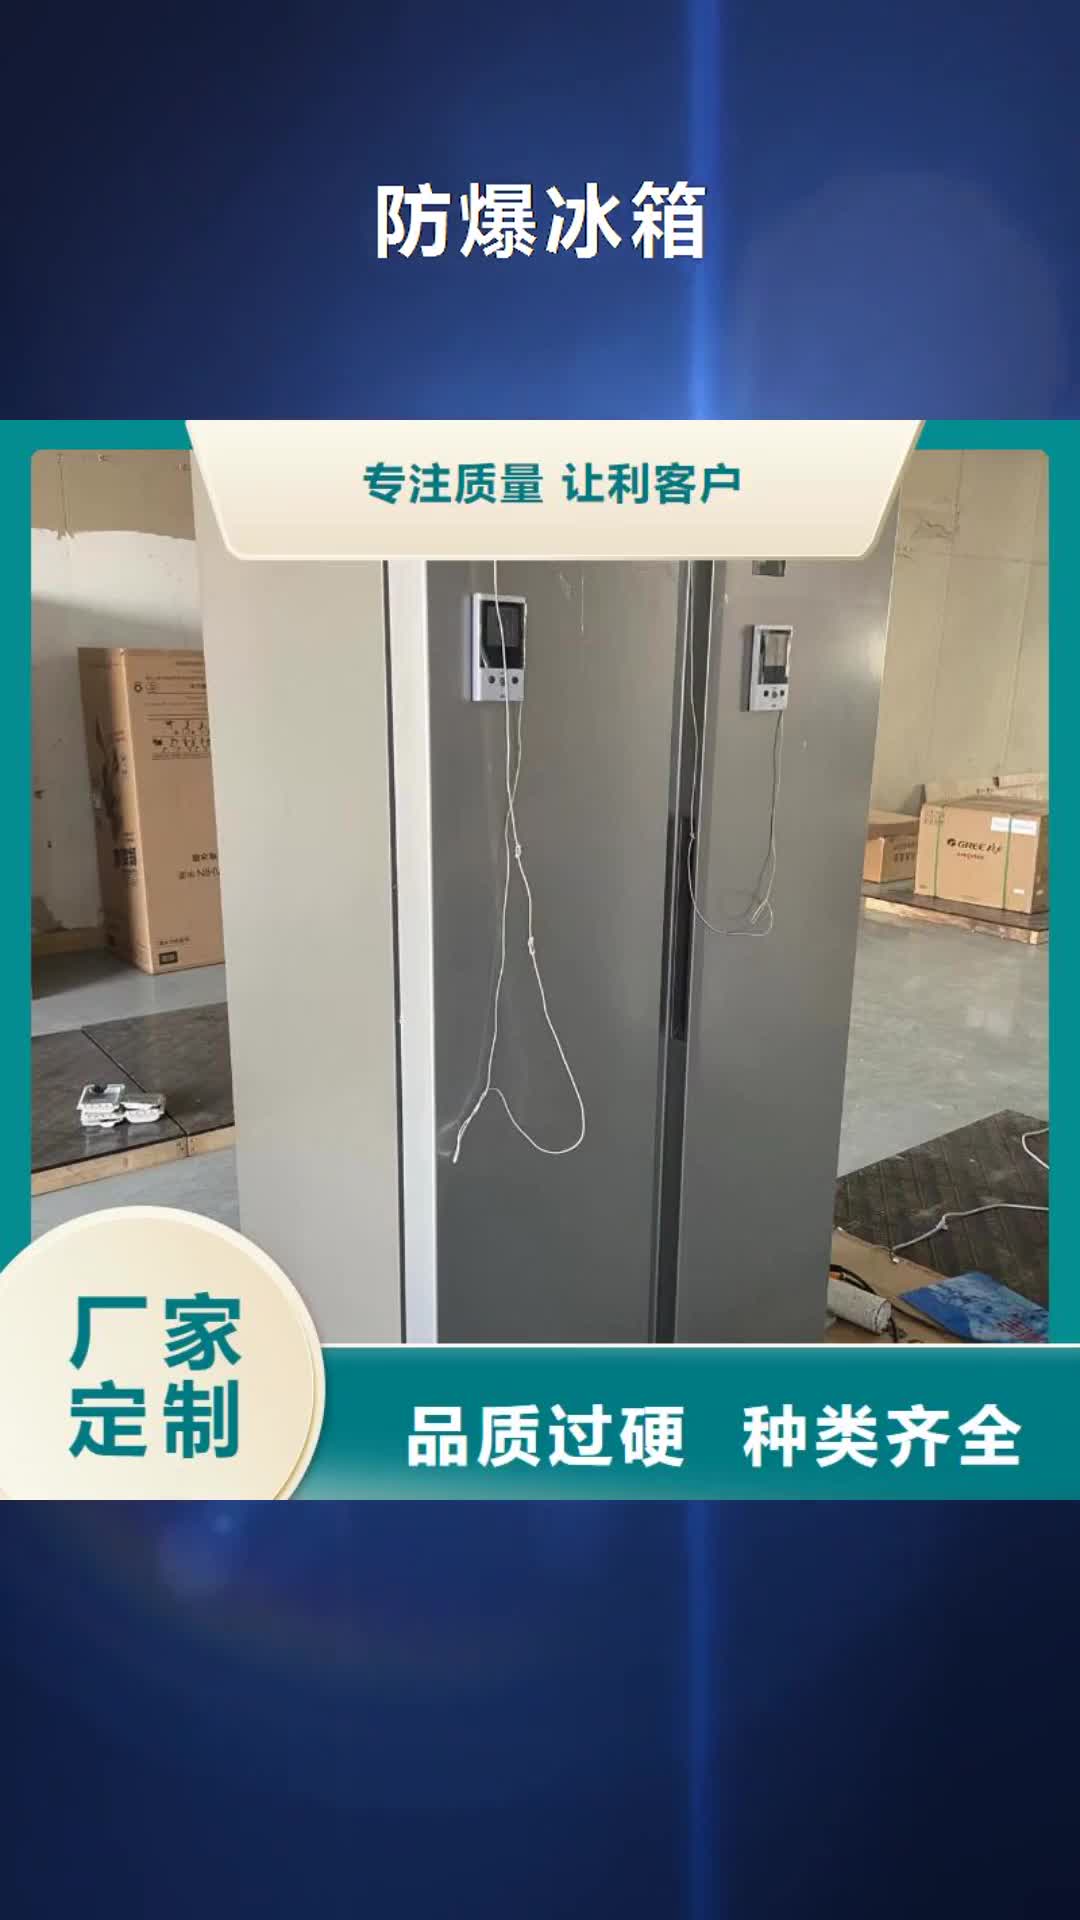 上海 防爆冰箱拒绝伪劣产品